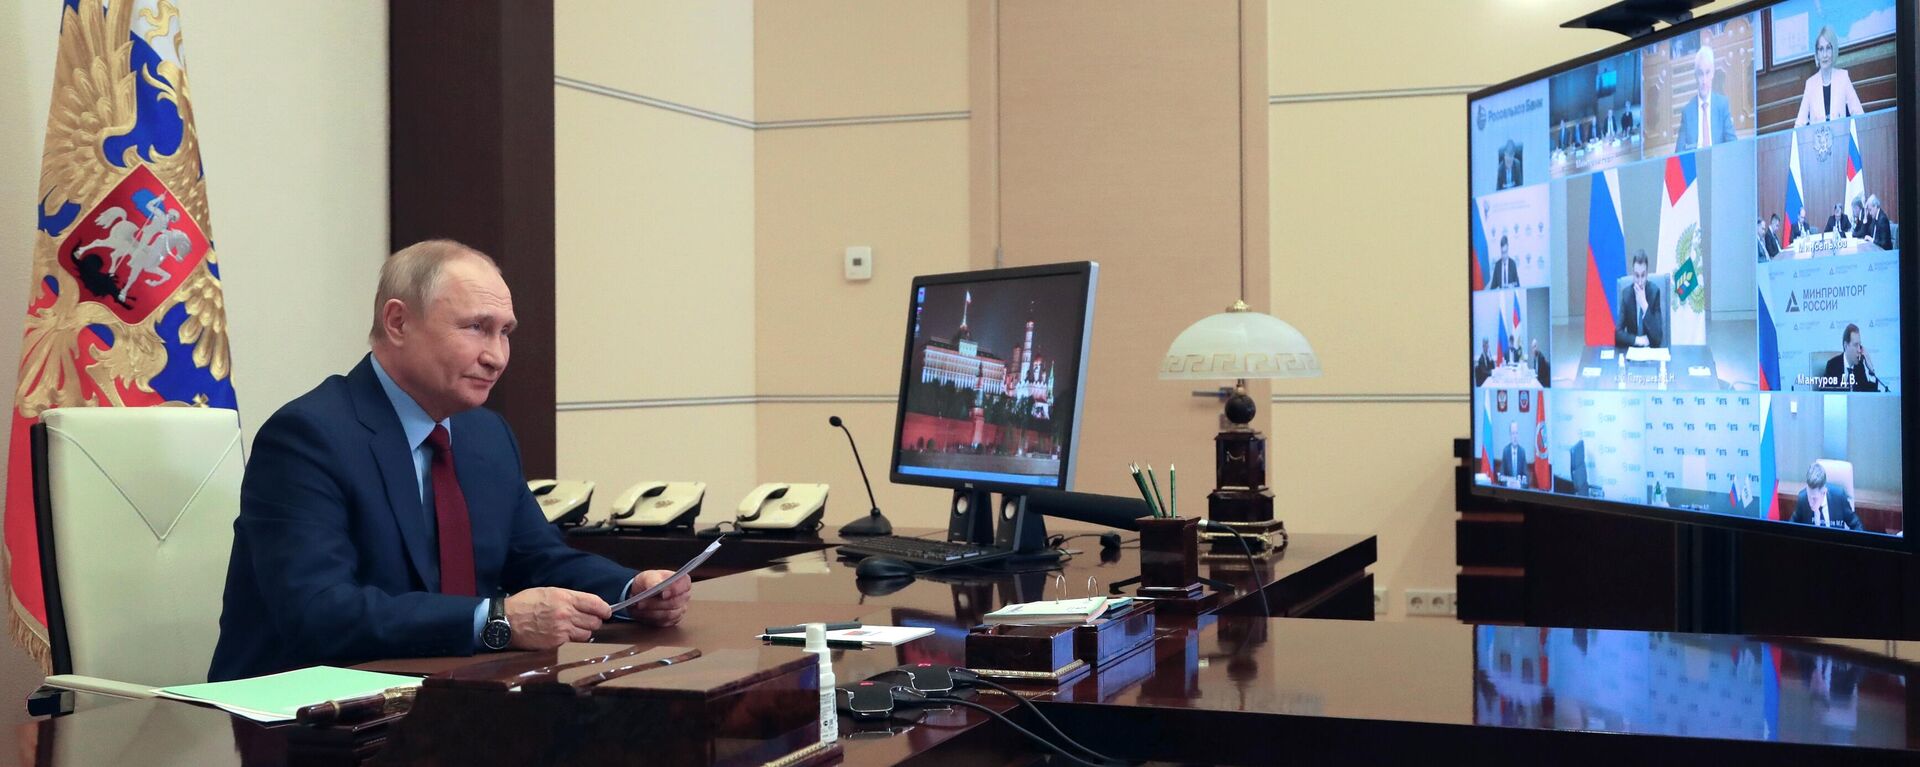 Presidente russo, Vladimir Putin, realiza reunião em formato de videoconferência sobre desenvolvimento do setor agroindustrial, Moscou, 5 de abril de 2022 - Sputnik Brasil, 1920, 05.04.2022